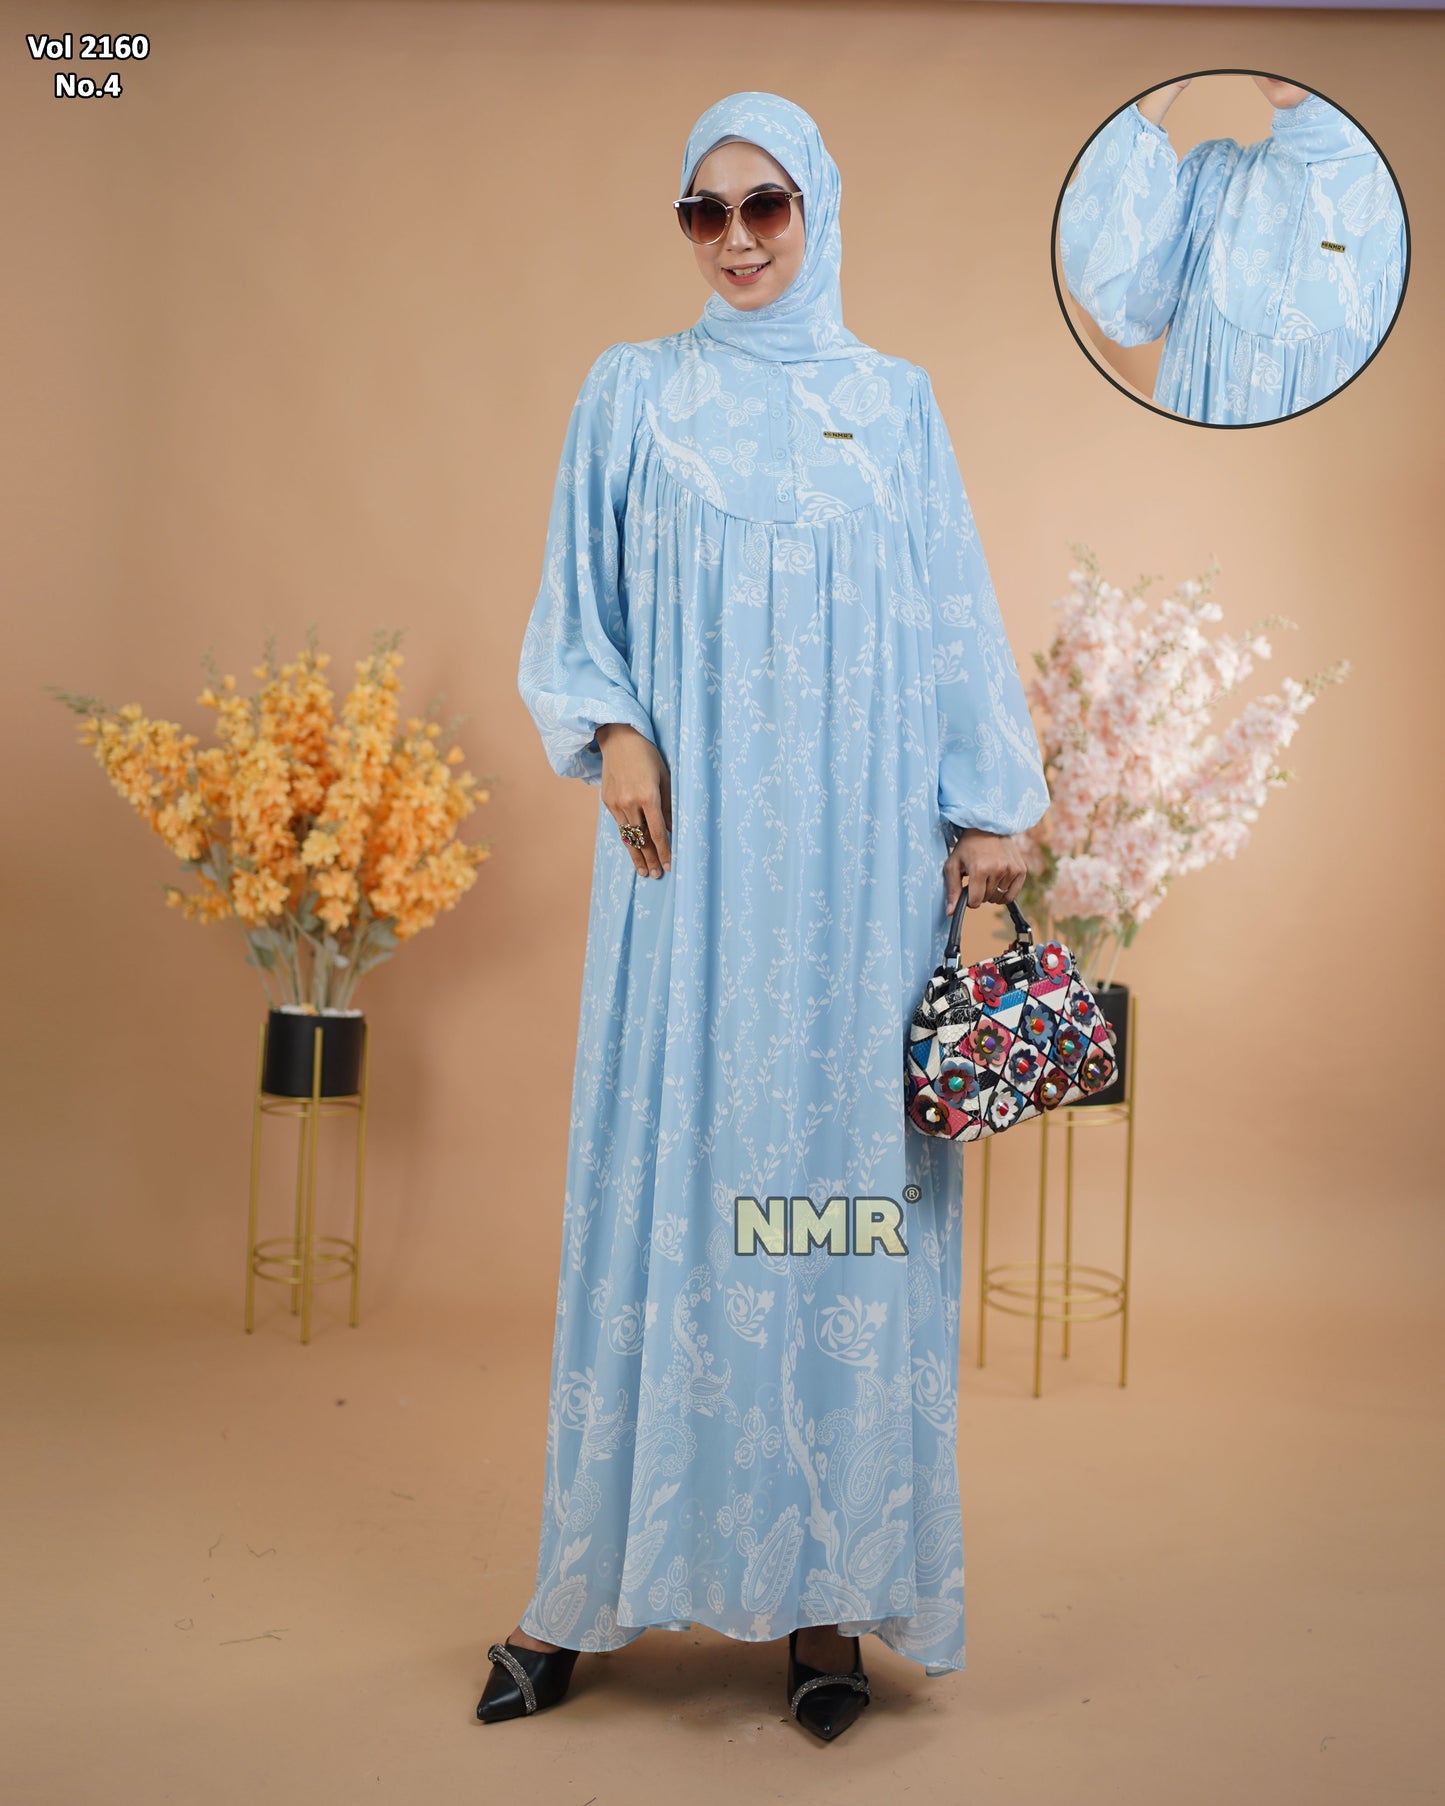 NMR Gamis Cerutty BabyDoll Premium Vol 2160-4 ( INC Hijab )